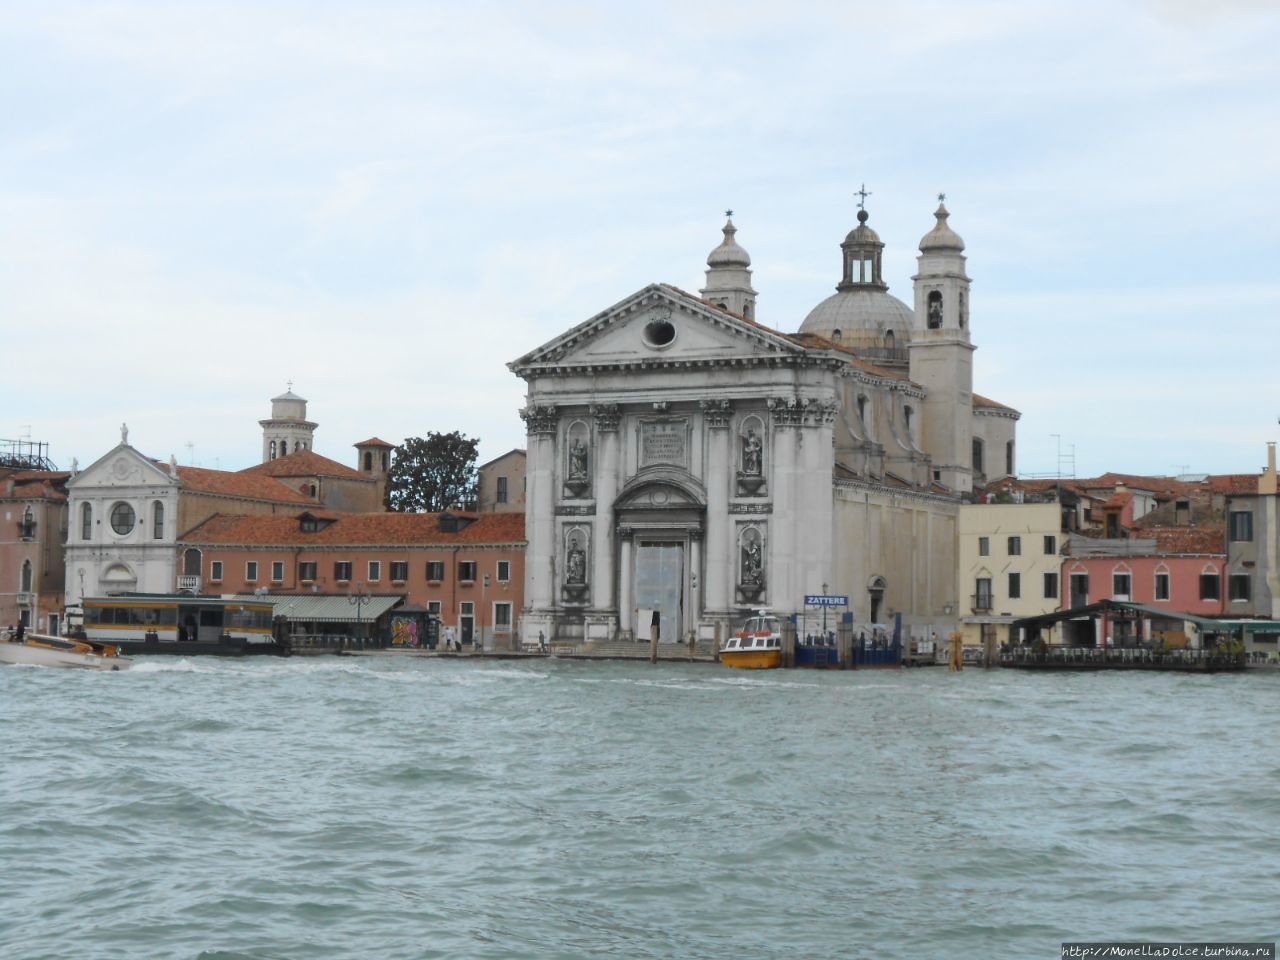 Venezia: на лайнере вдоль Венецианской лагуны Венеция, Италия